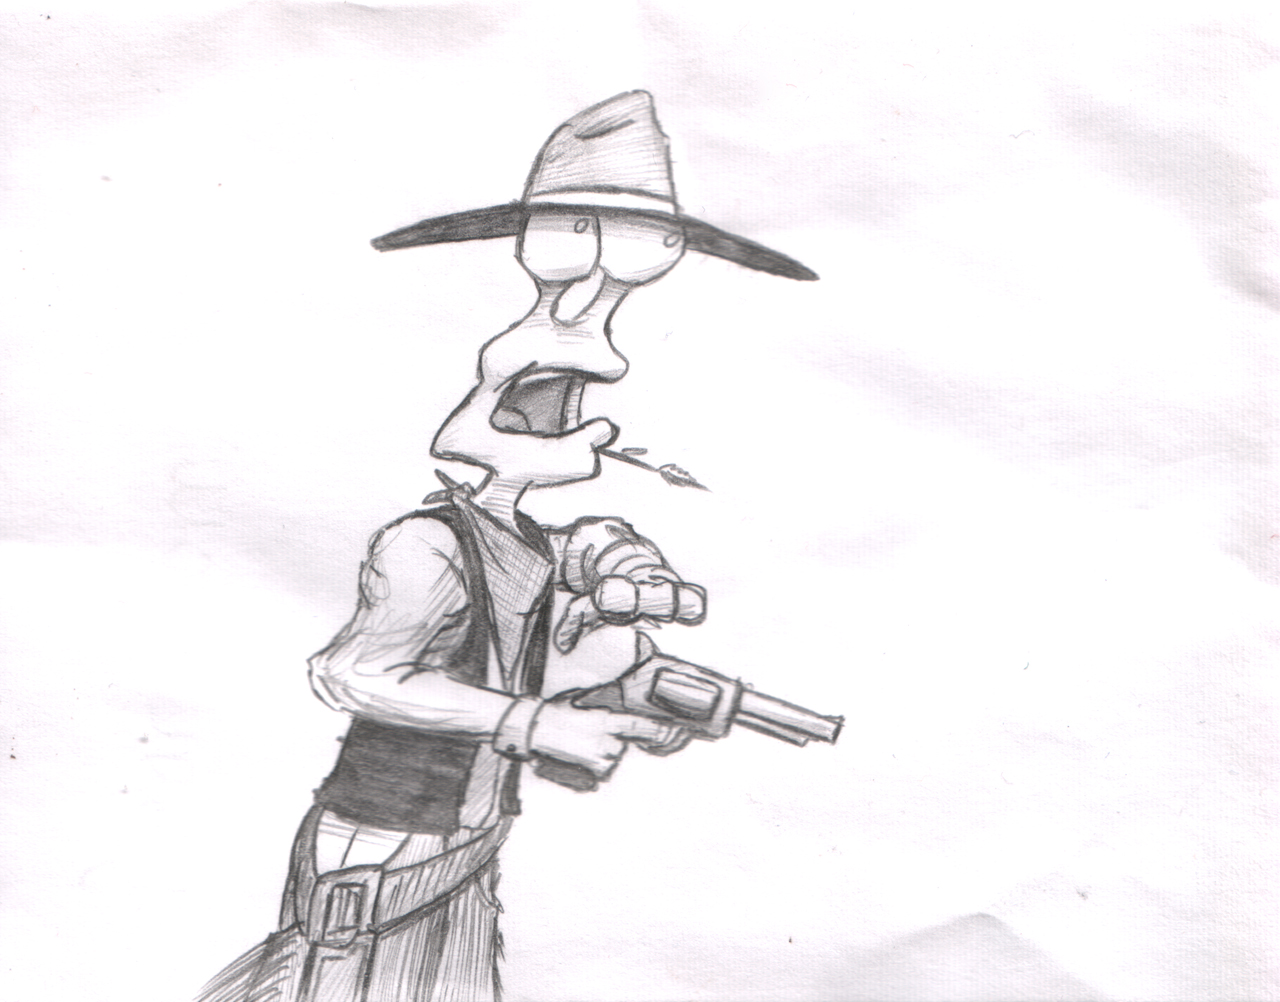 Mr Squishy as a Cowboy